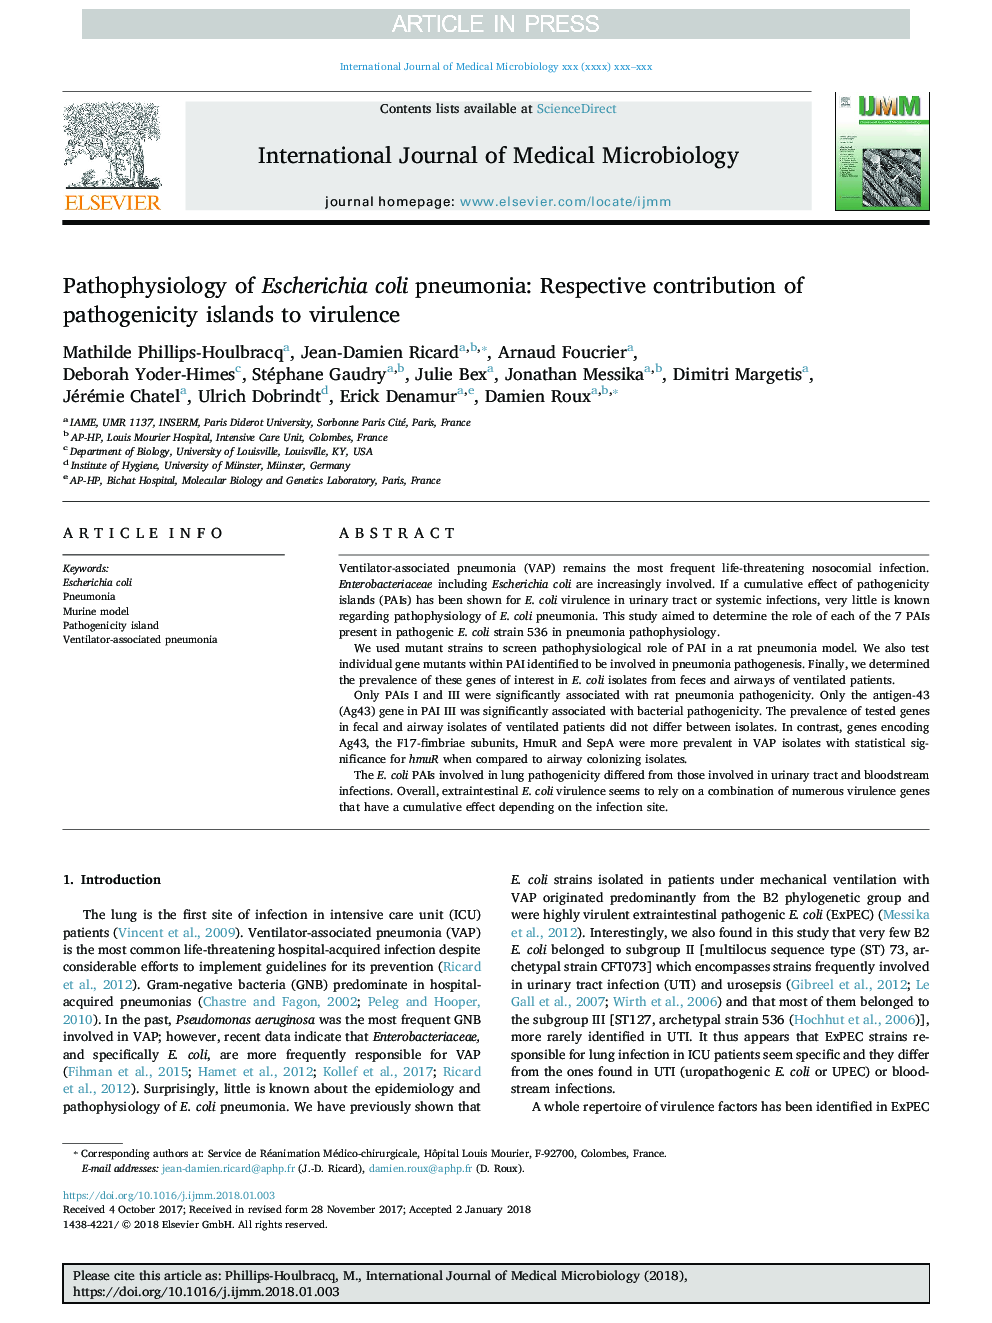 پاتوفیزیولوژی پنومونی اشرشیا کولی: سهم قابل توجهی از جزایر پاتوژنز به ویروس 